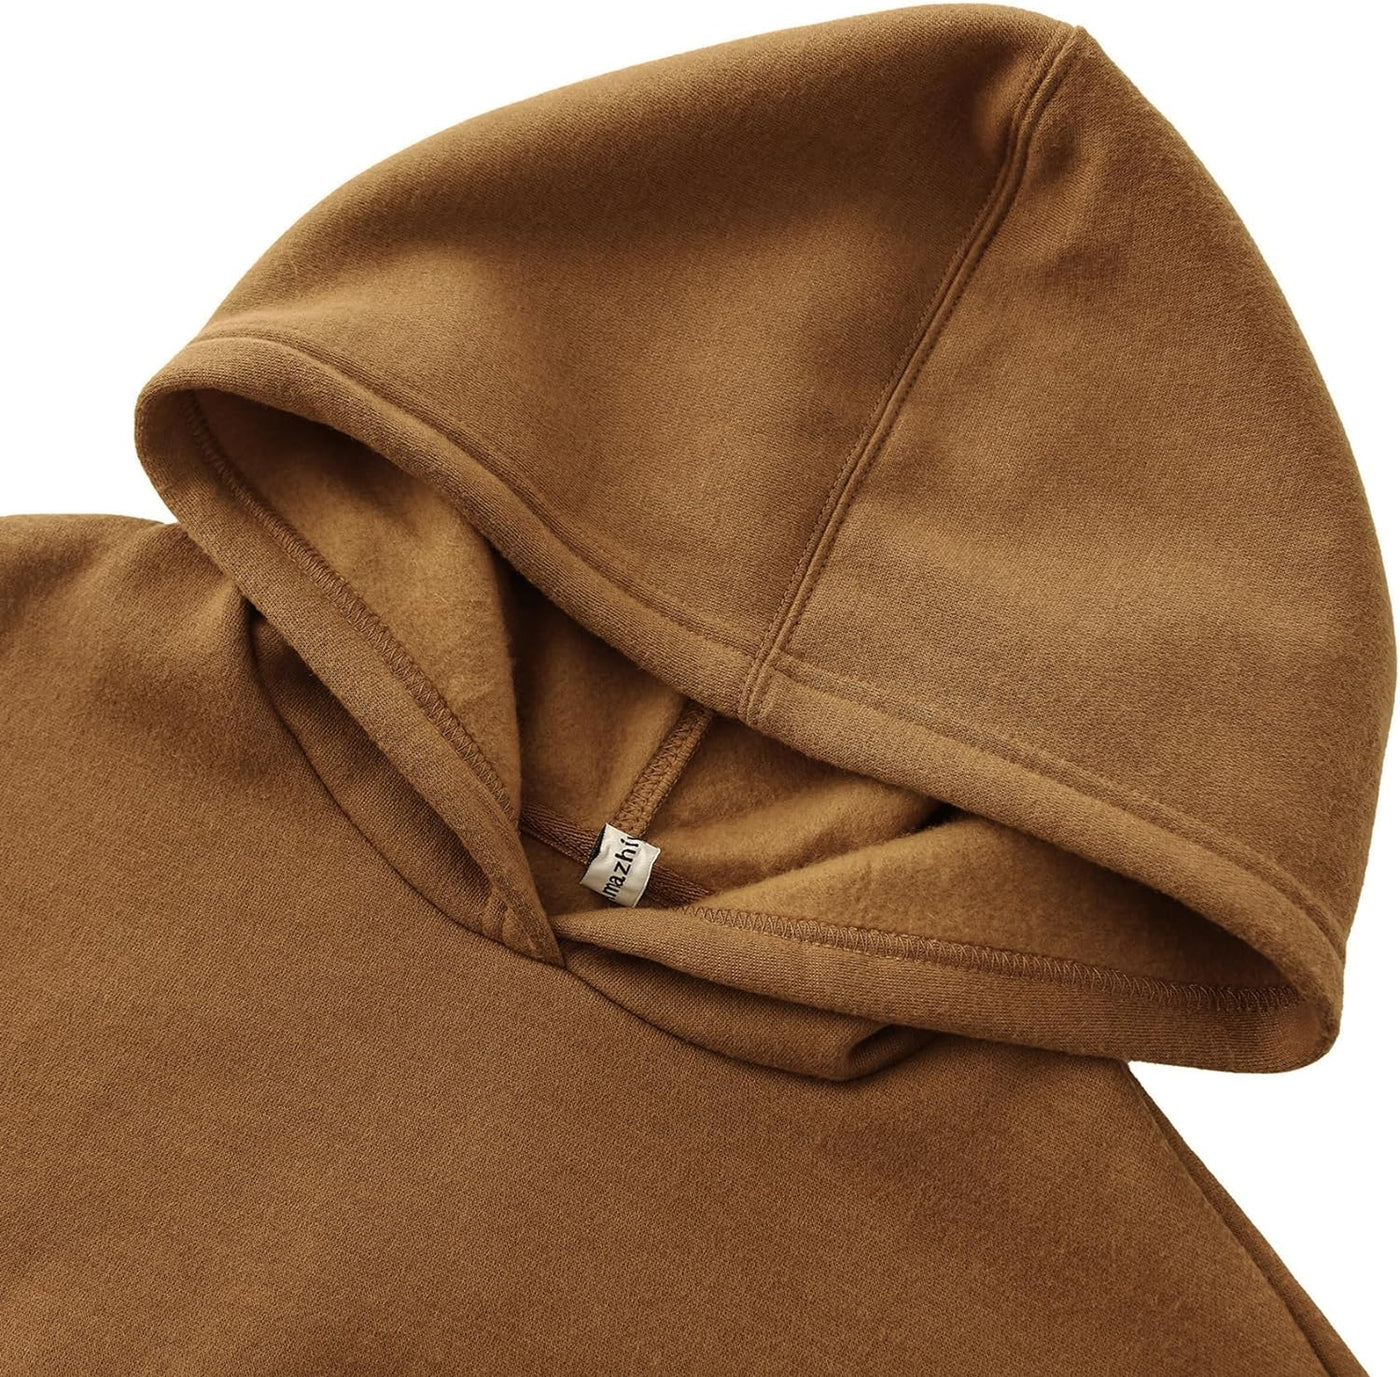 NTG Fad Women’s Fleece Cropped Hoodies Casual Crop Tops